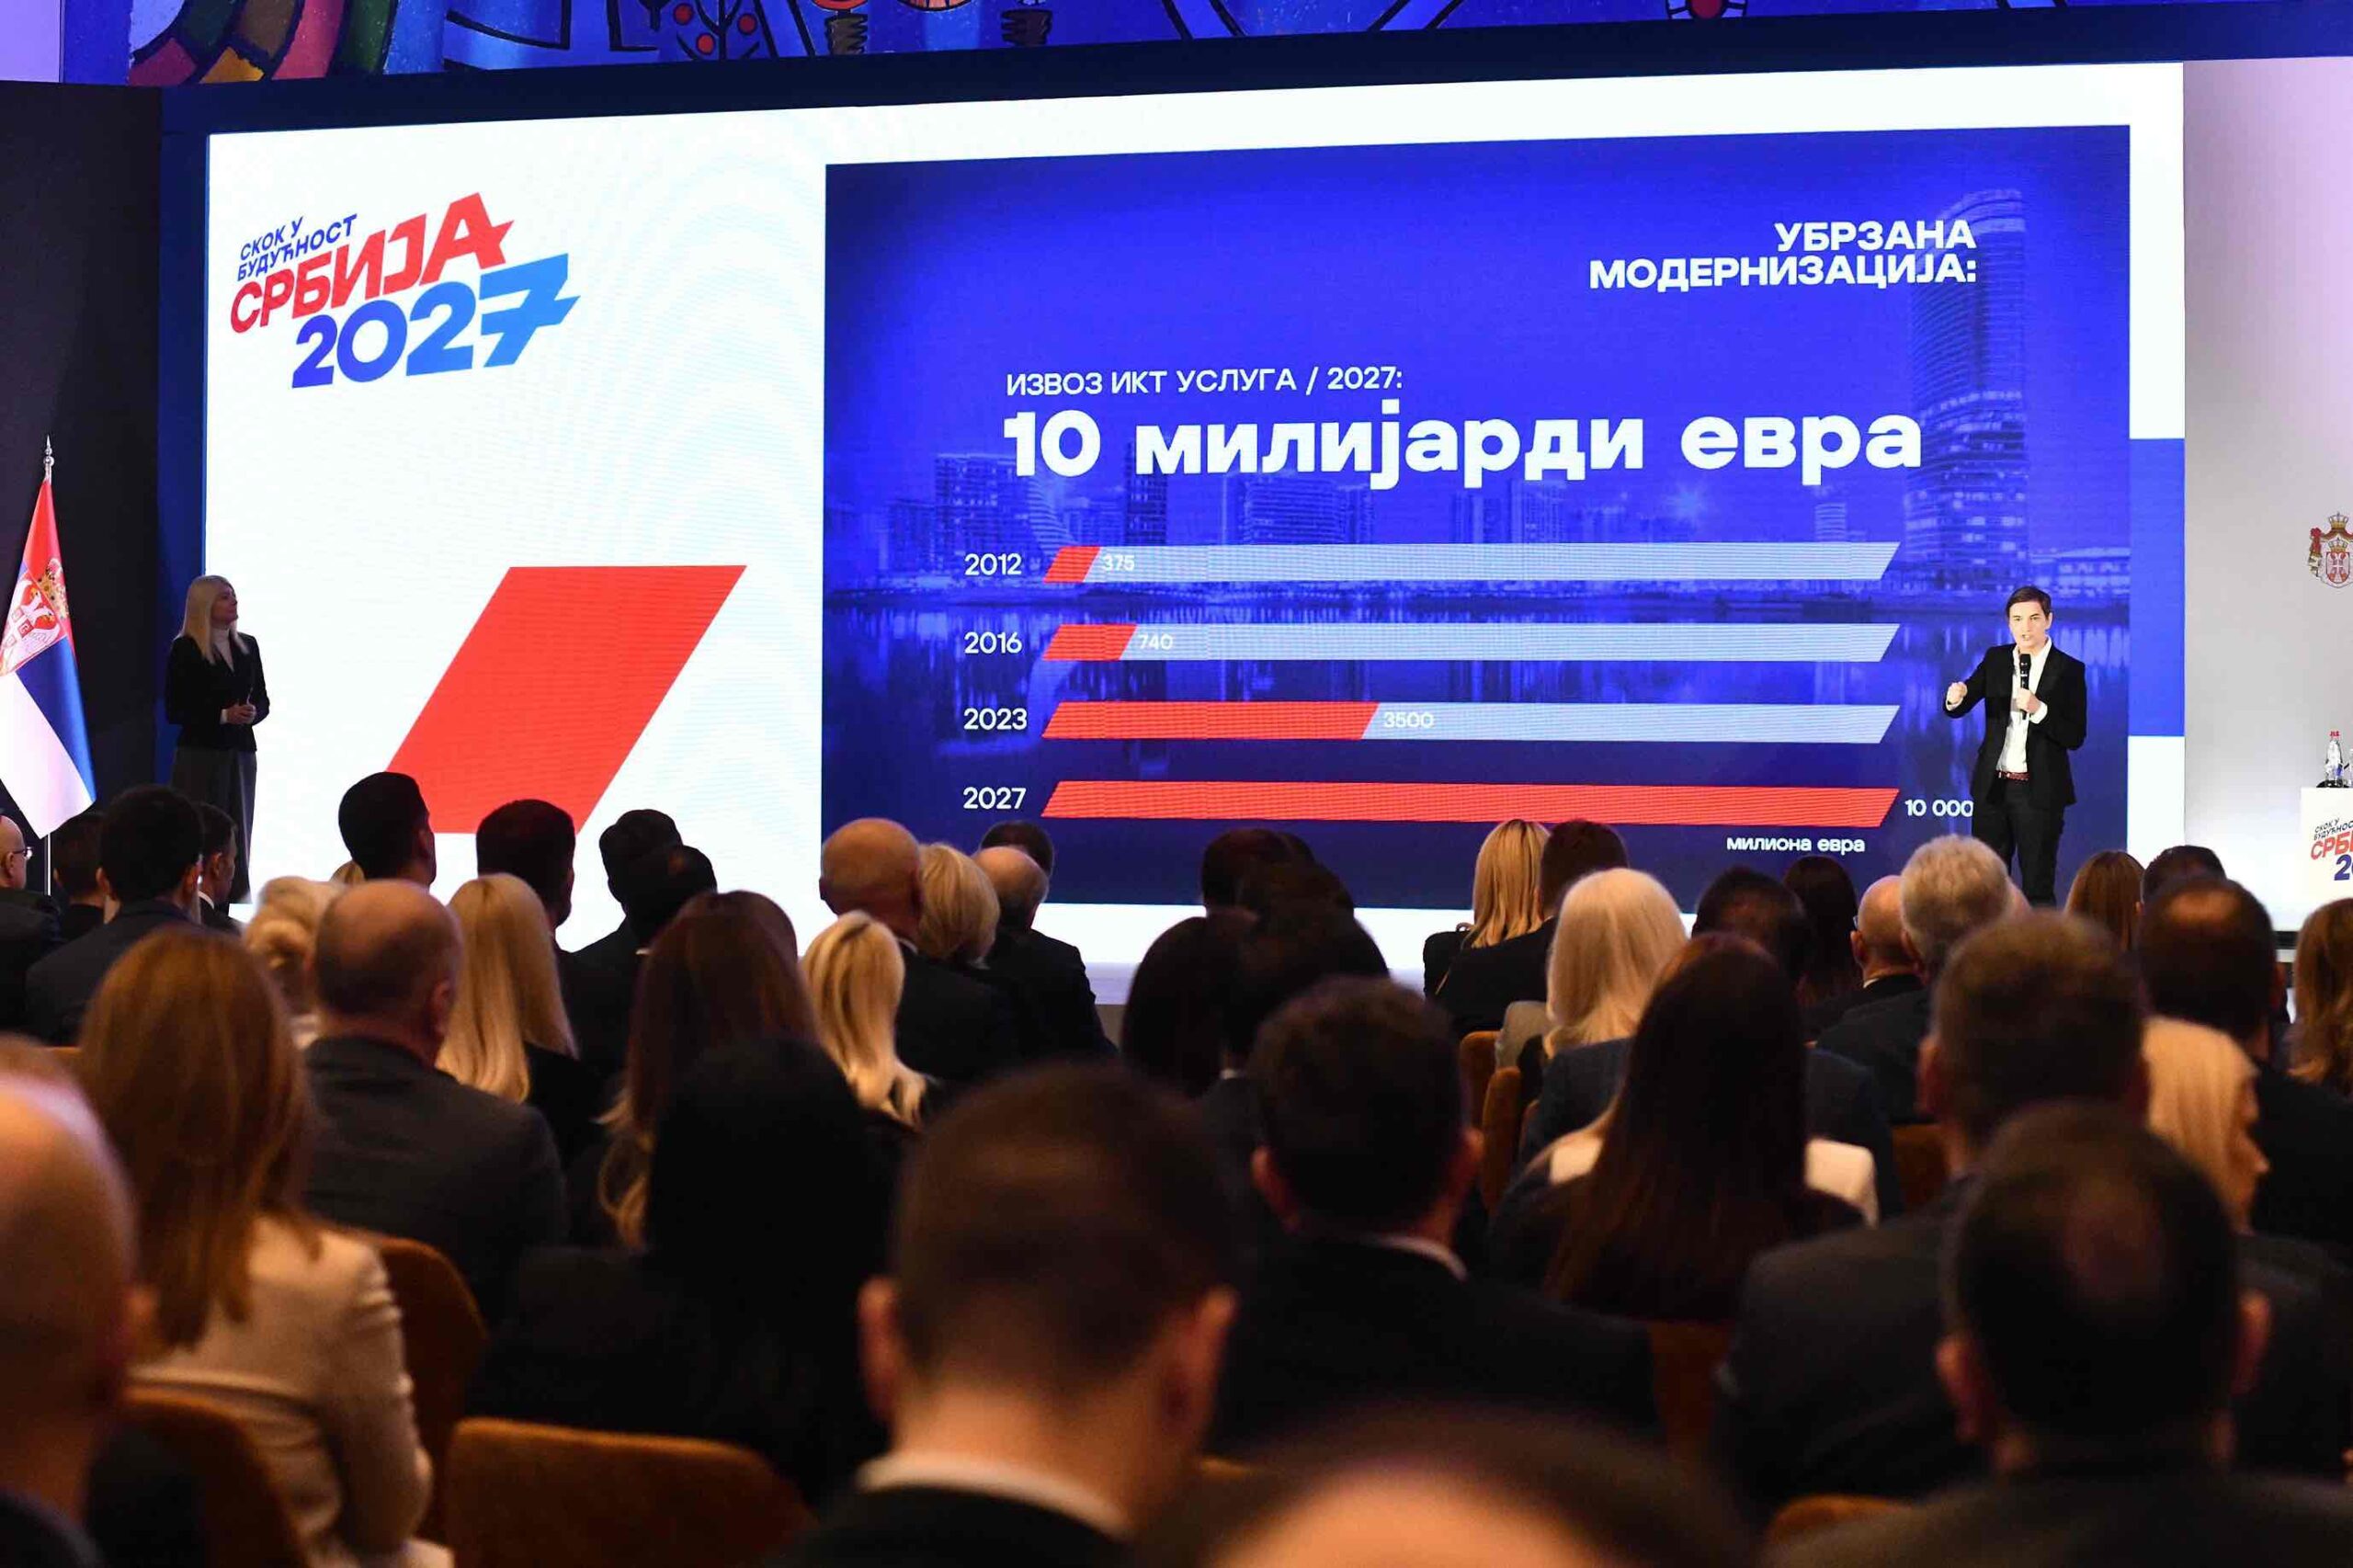 Predsednik Srbije Aleksandar Vucic predstavio je program 'Skok u buducnost - Srbija EXPO 2027' za period od 2024. do 2027. godine, danas u Palati Srbija.